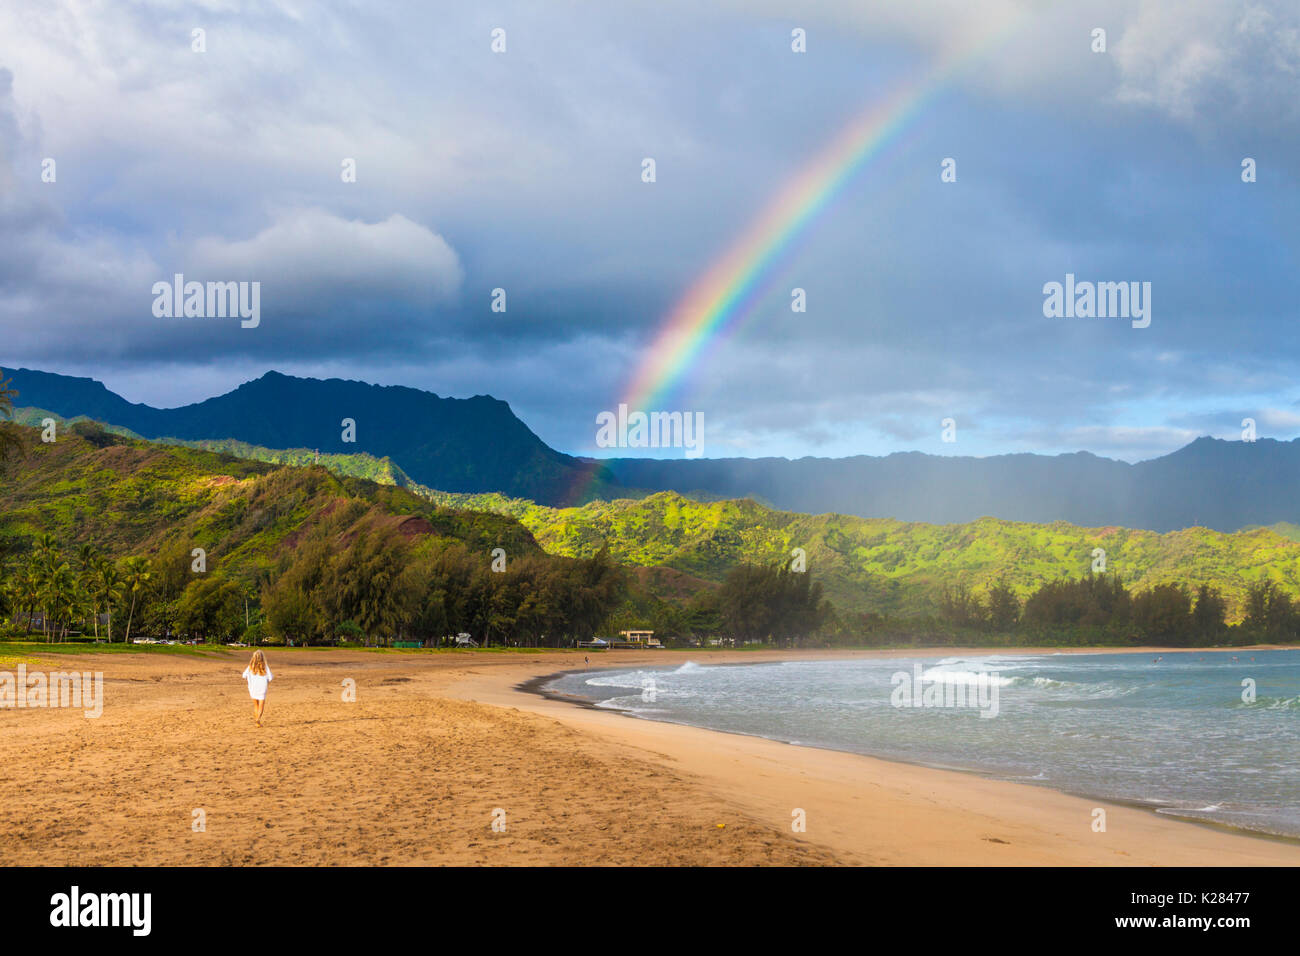 Woman walks at Hanalei Beach toward rainbow Stock Photo